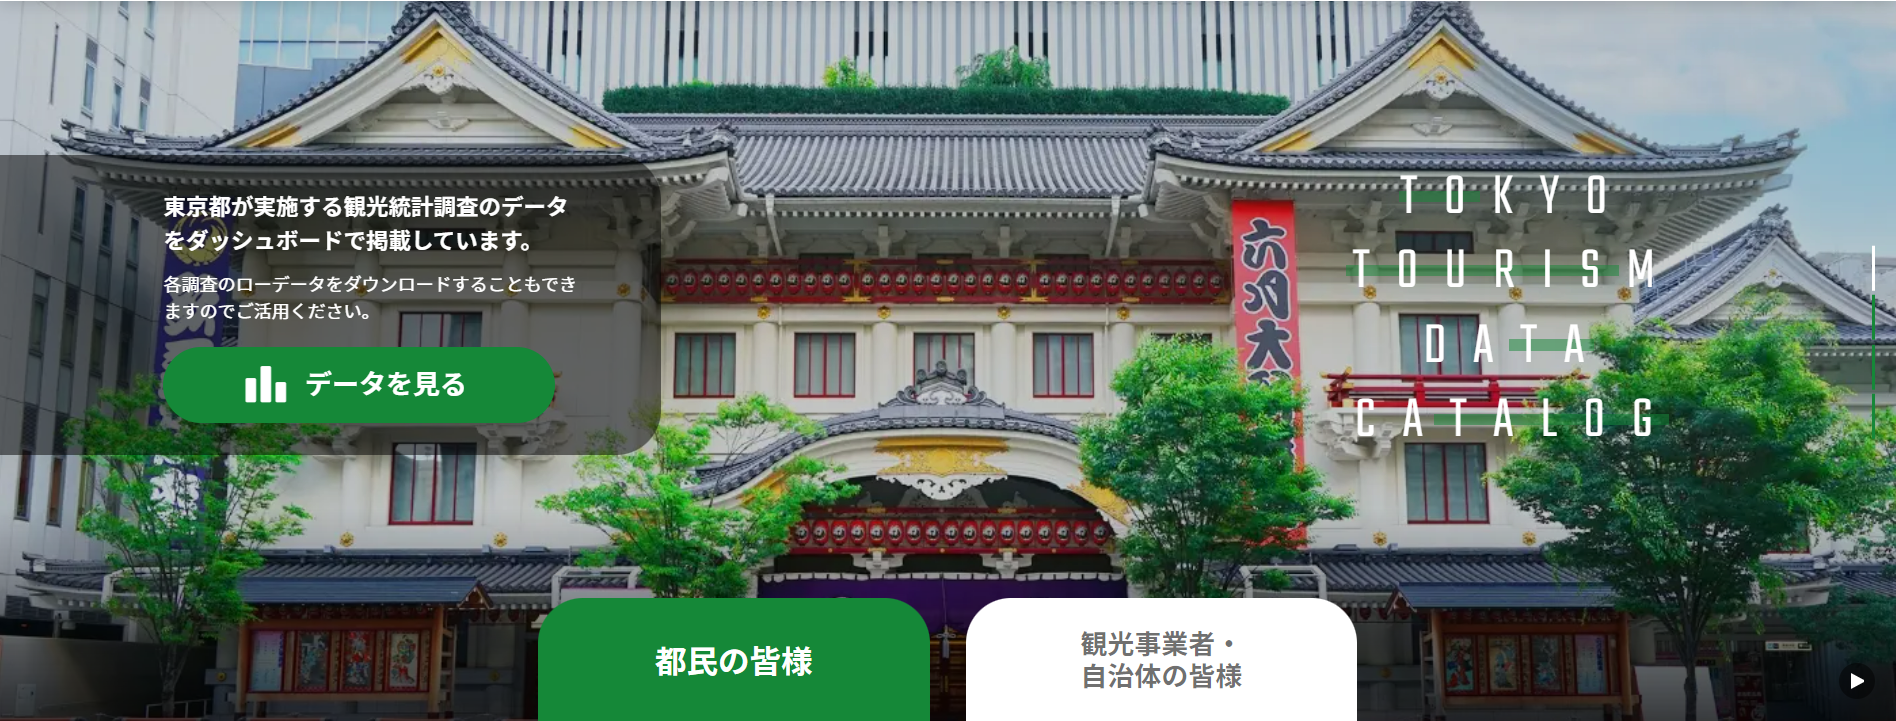 「東京都観光データカタログ」トップページ